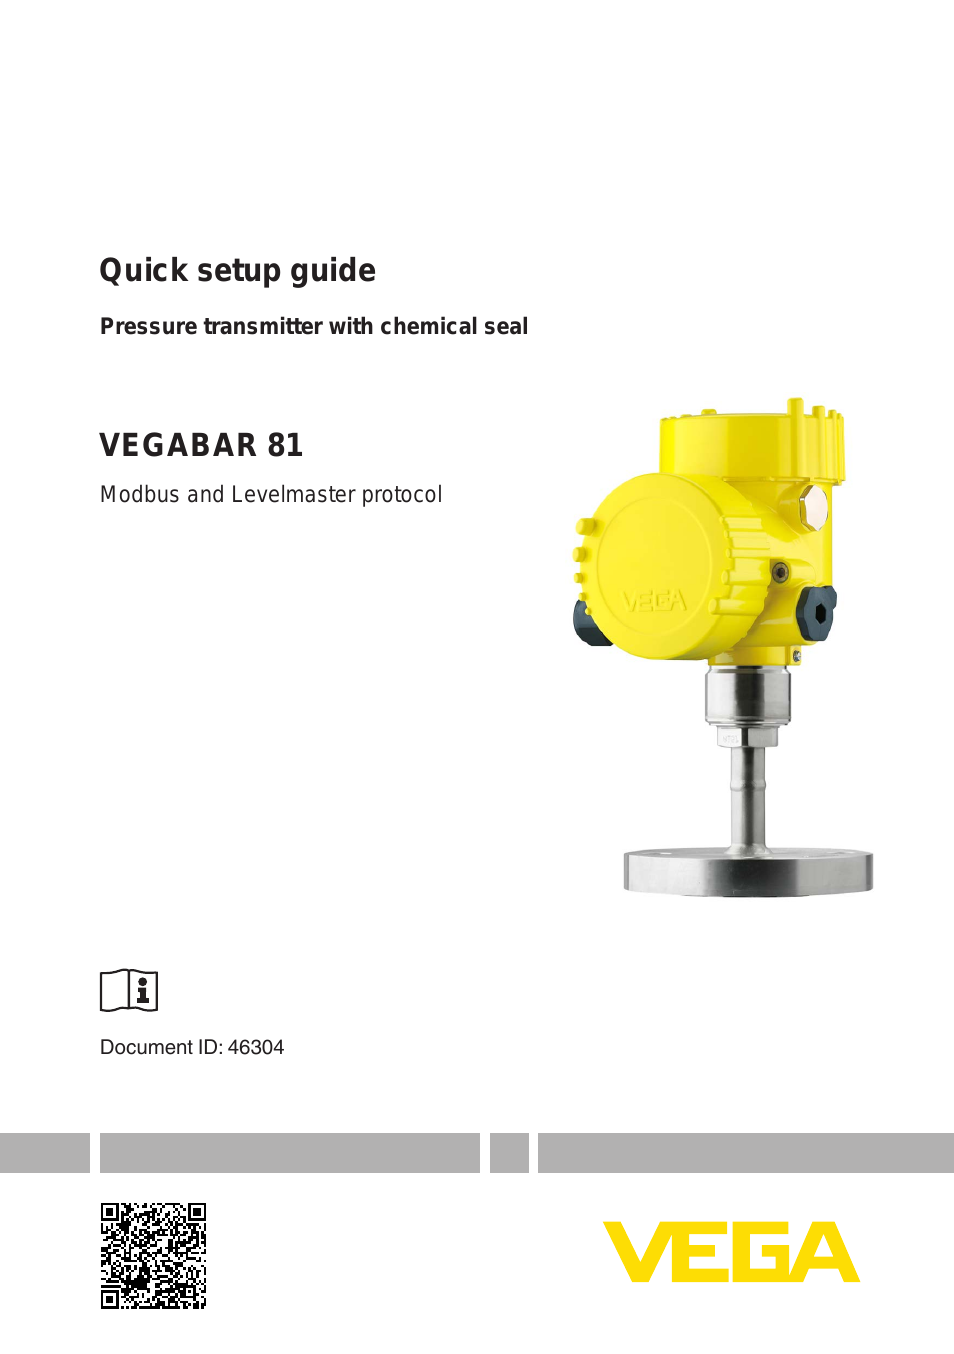 VEGABAR 81 Modbus and Levelmaster protocol - Quick setup guide